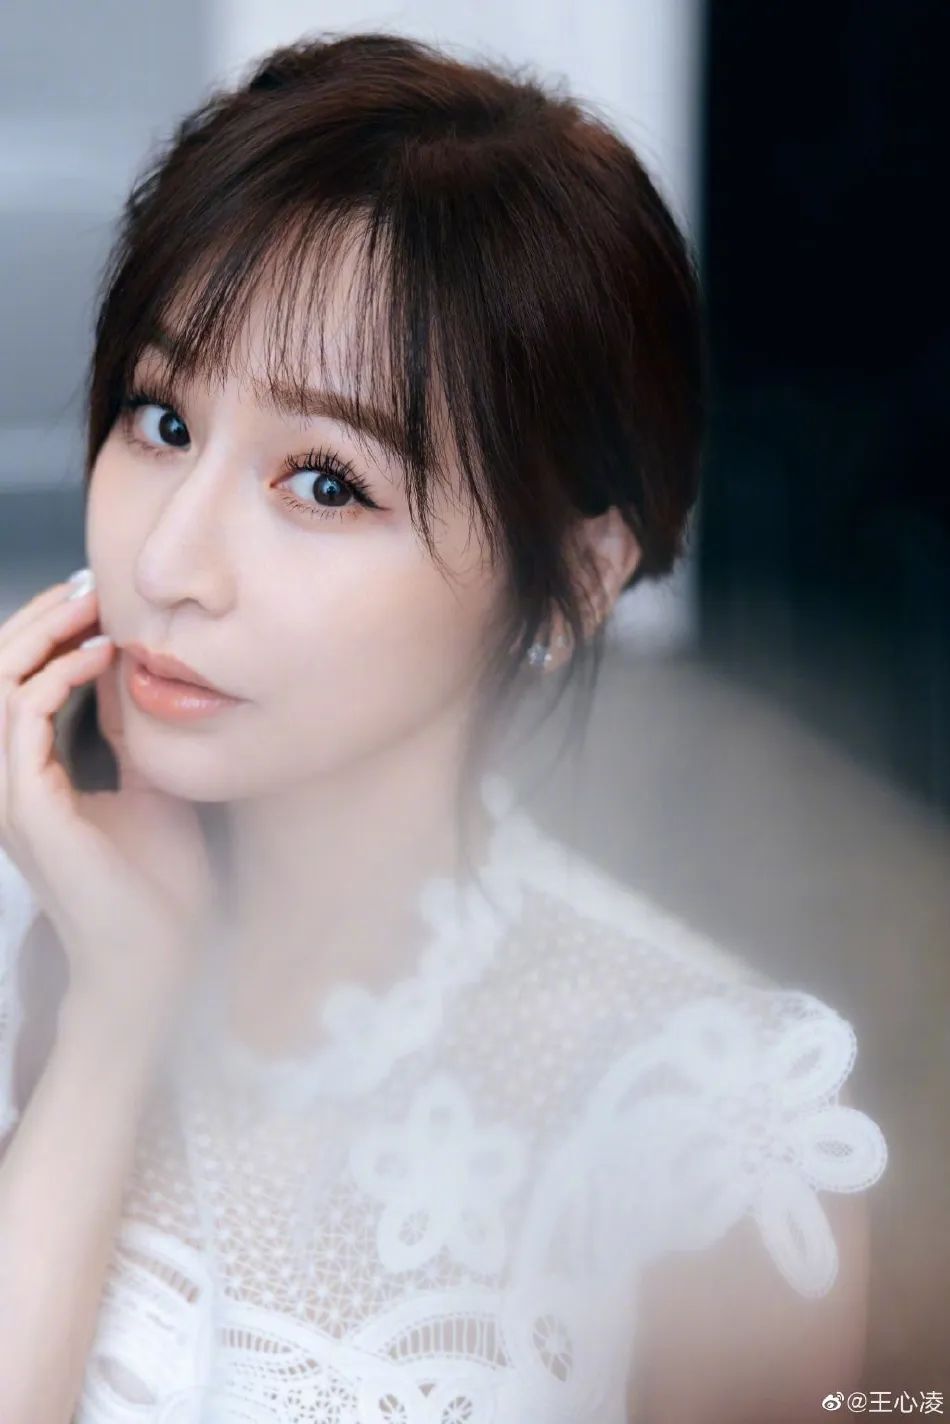 王心凌在微博发布一组自己的写真,穿着白色连衣裙,俏脸温婉清爽